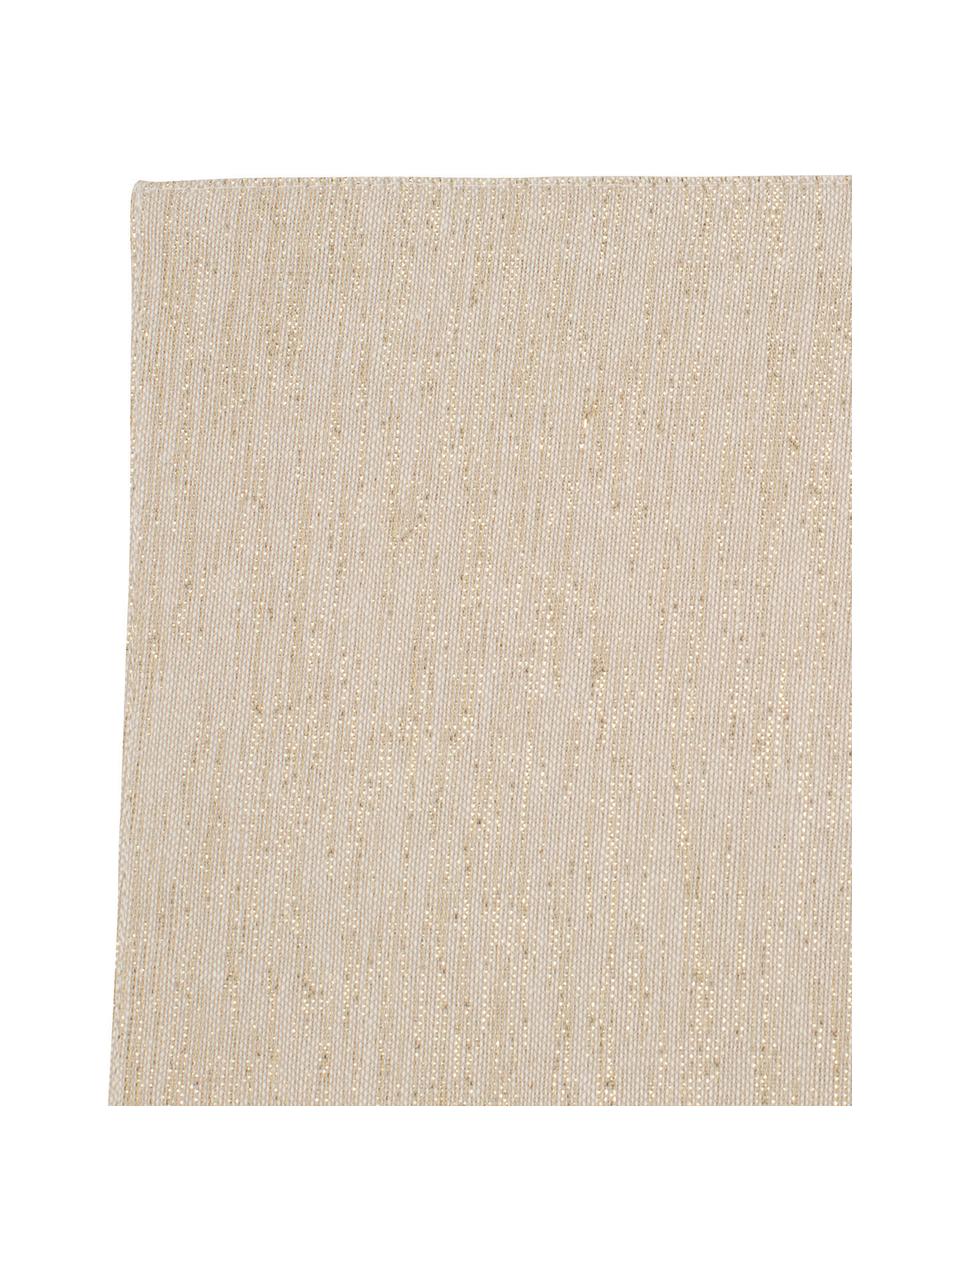 Podkładka z bawełny Vialactea, 2 szt., Bawełna, lureks, Beżowy, odcienie złotego, S 38 x D 50 cm